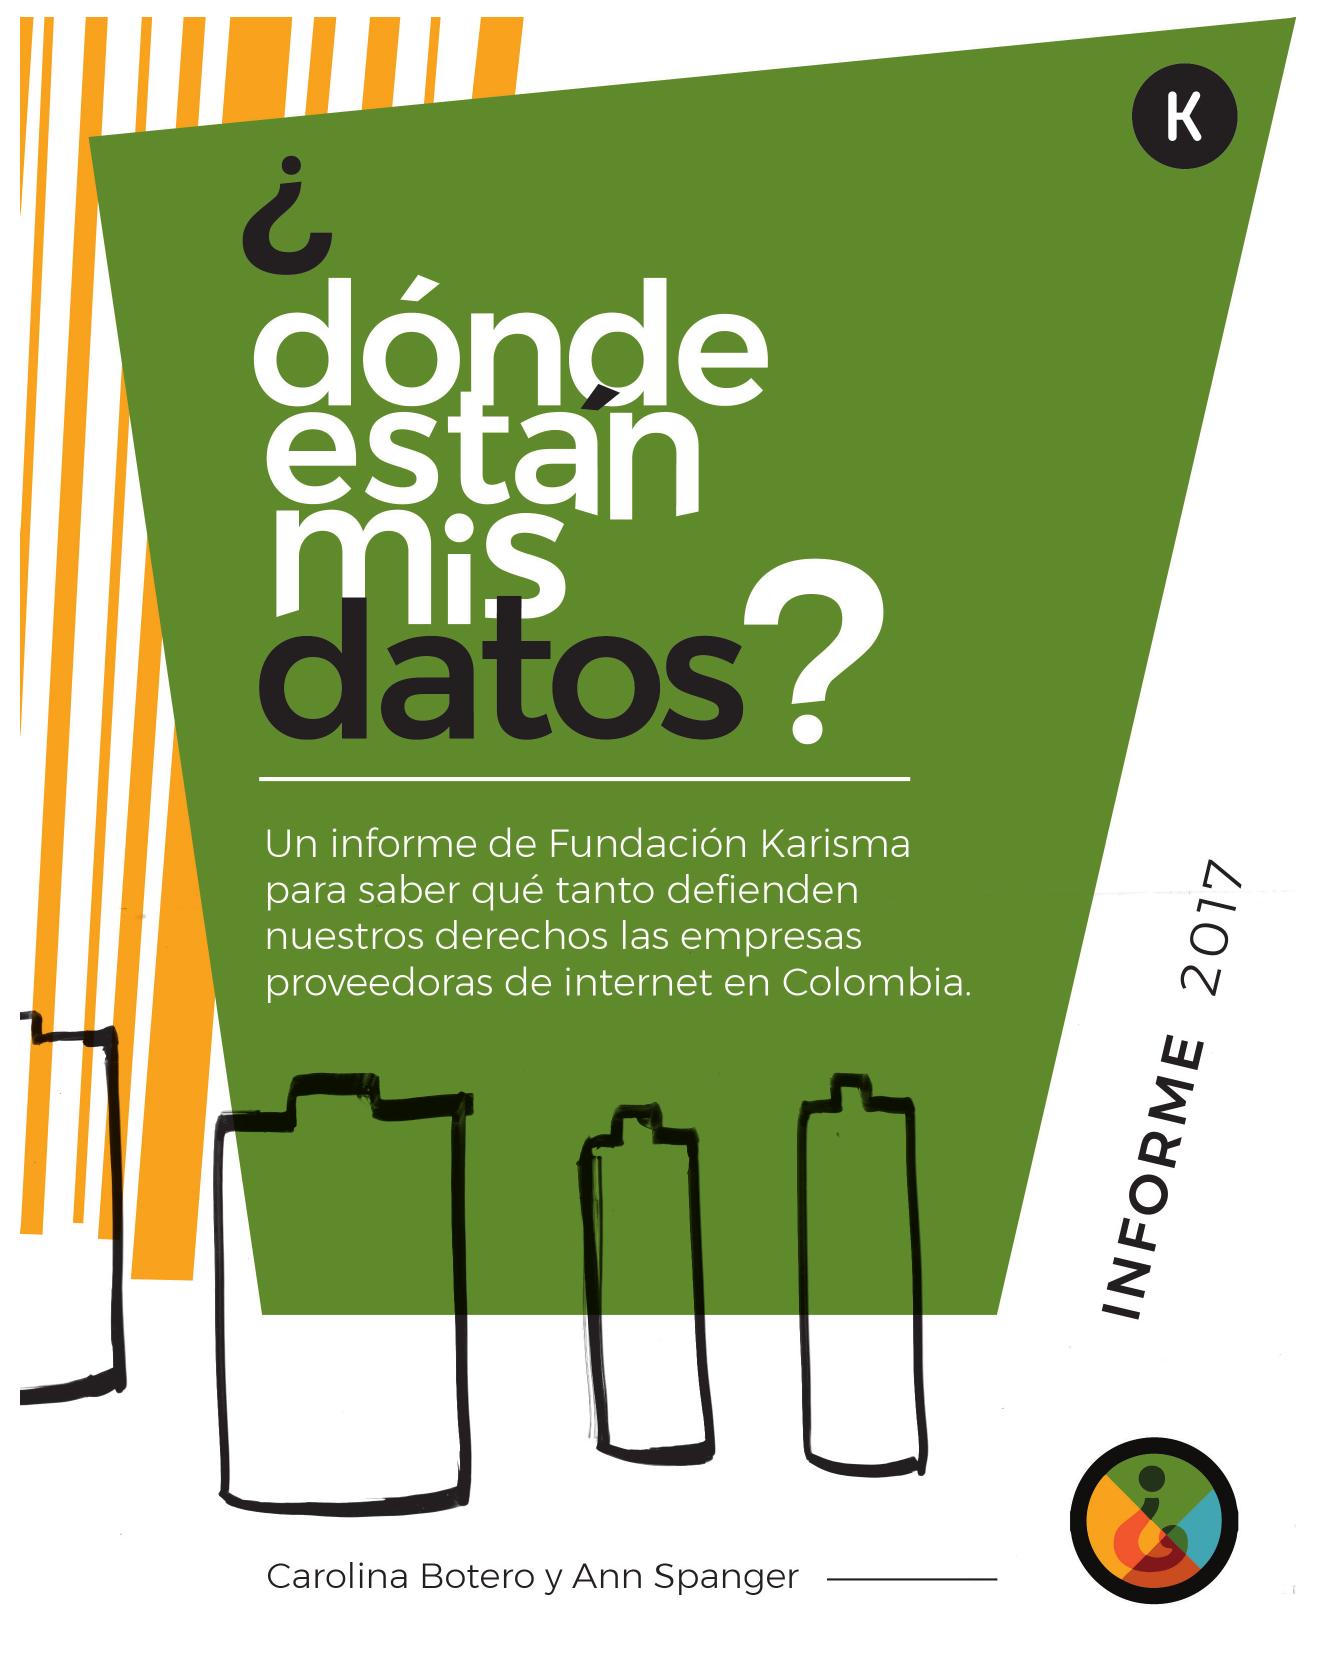 Resumen ejecutivo ¿Dónde están mis Datos? 2017 :: Un informe de la Fundación Karisma para saber cuánto defienden nuestros derechos las empresas proveedoras de internet en Colombia